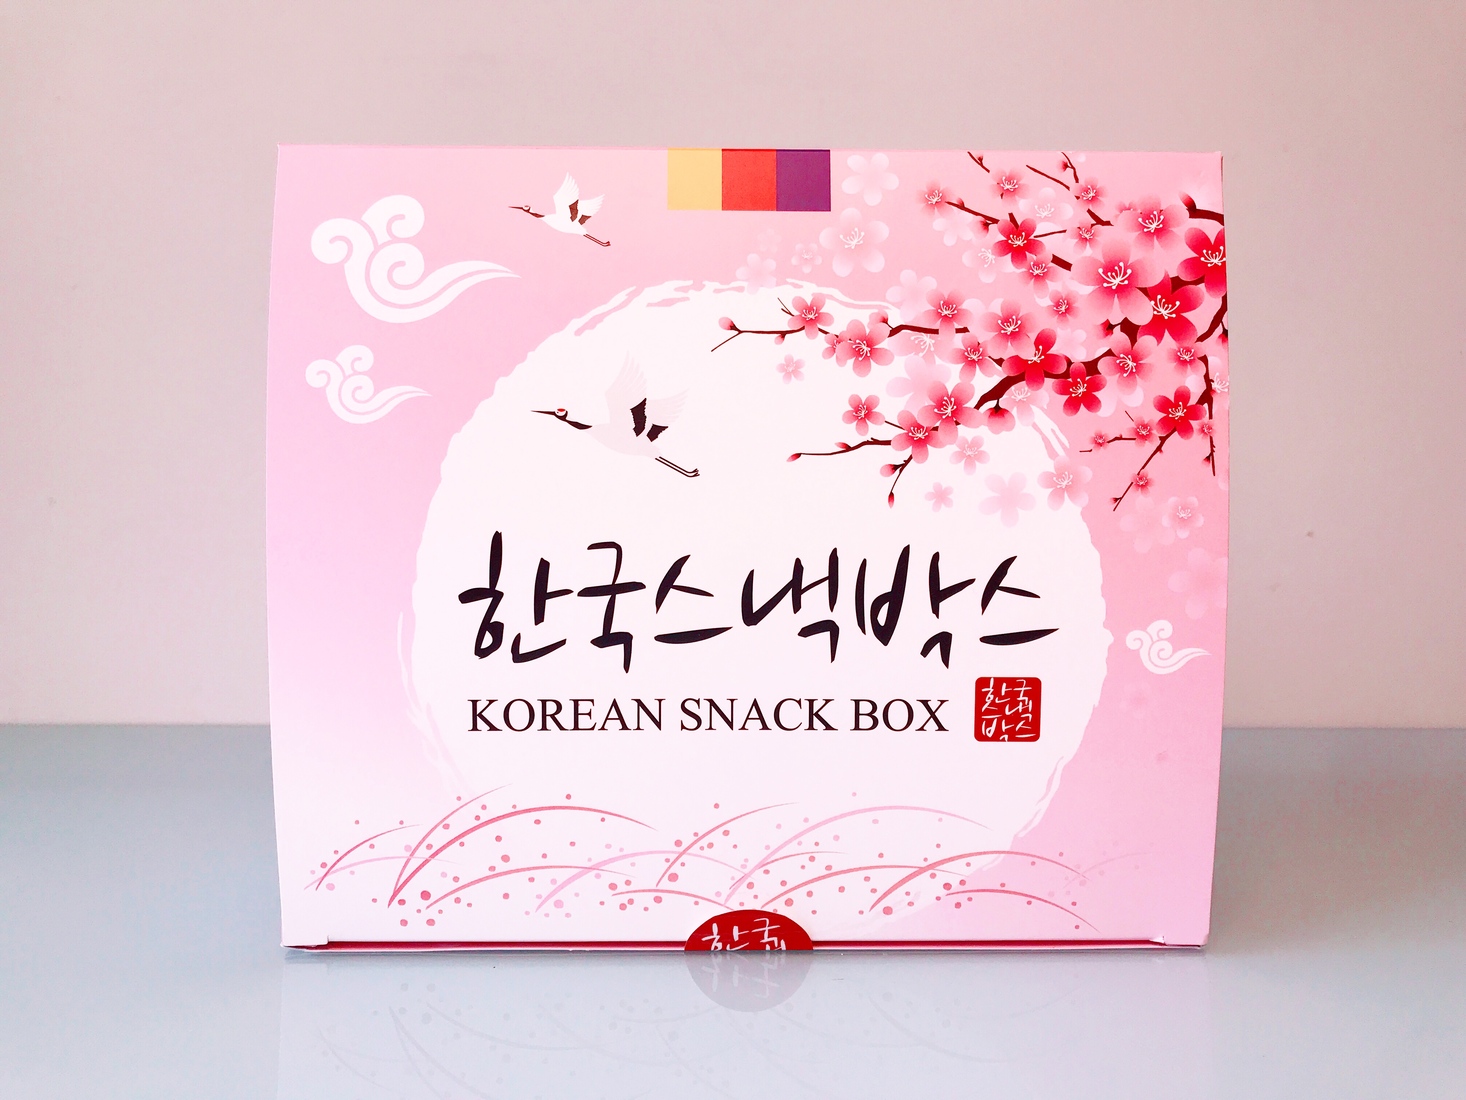 Korean Snacks Box Review + Coupon – May 2019